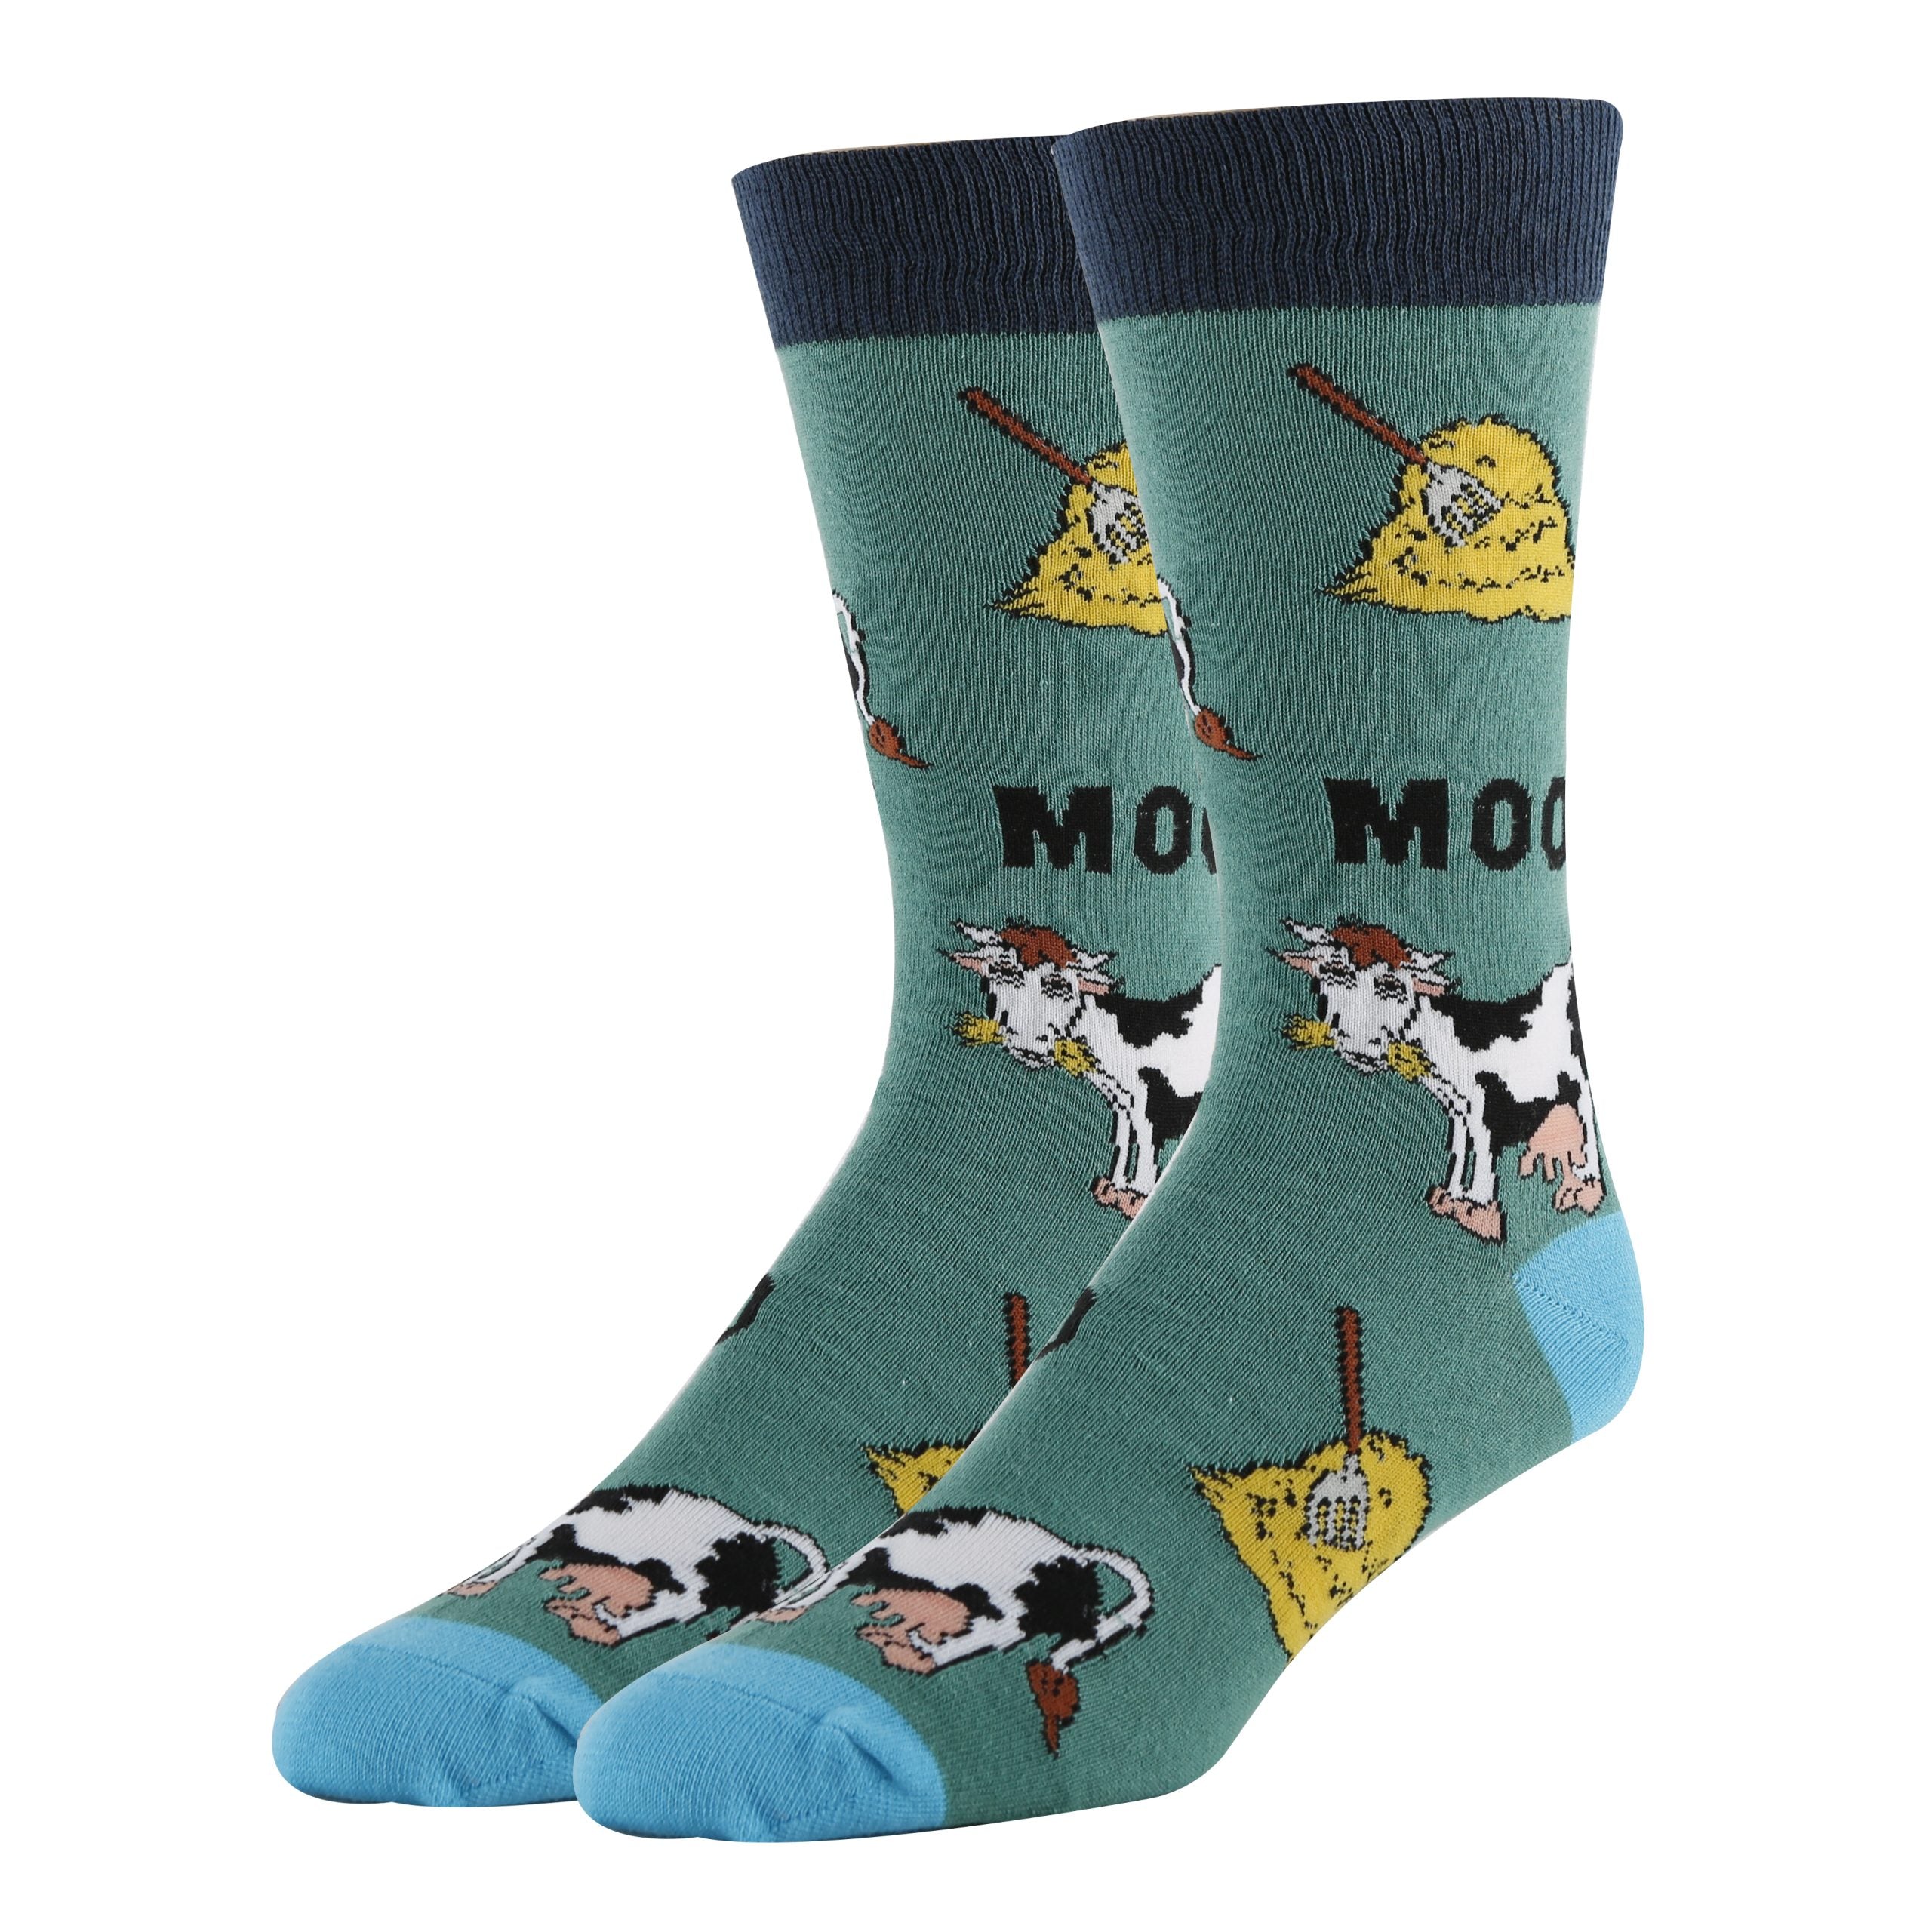 Mooo Socks | Funny Crew Socks for Men